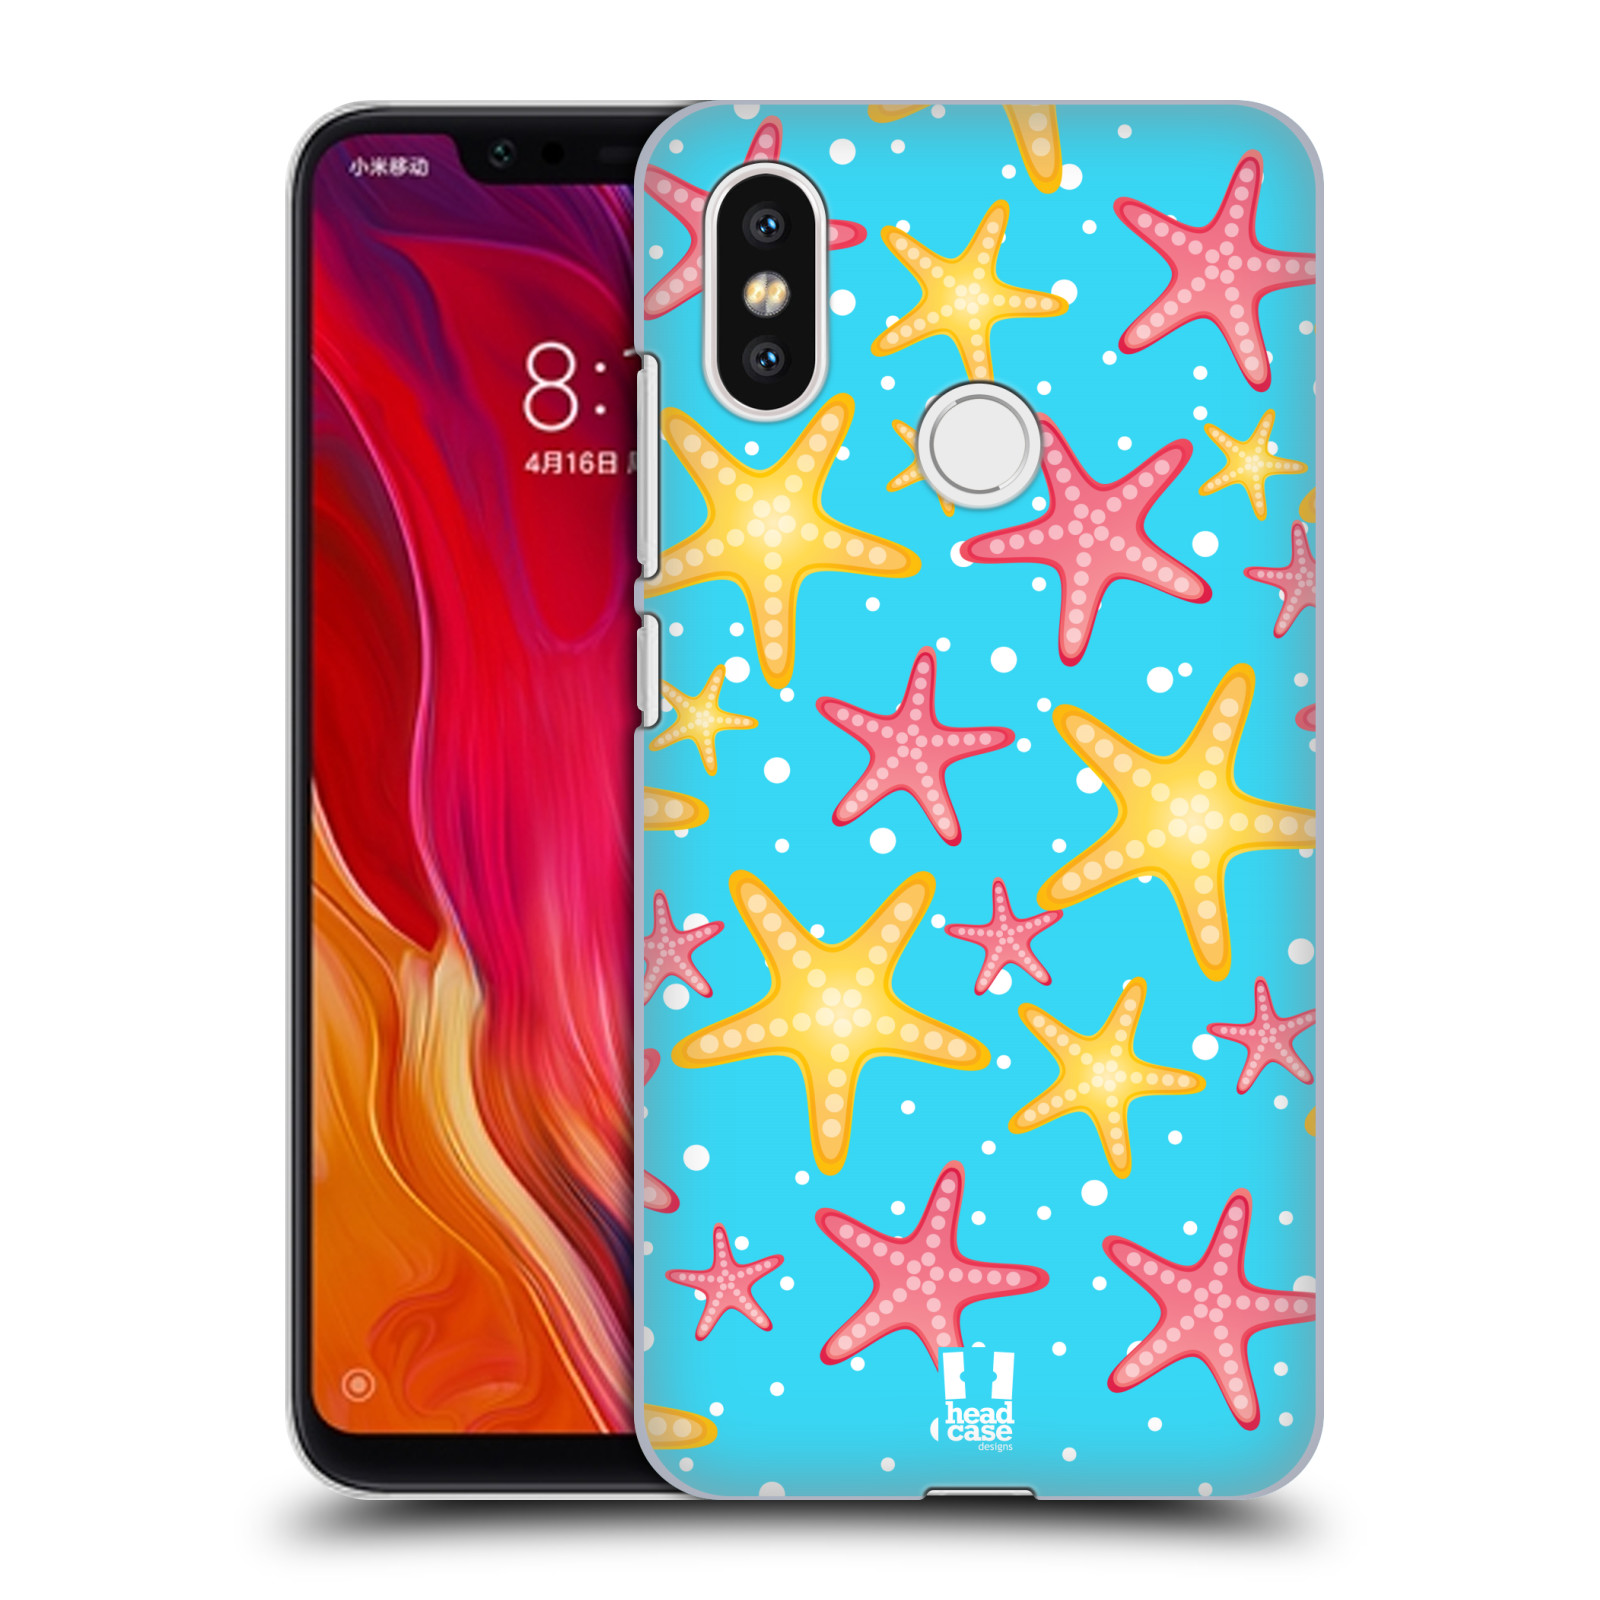 Zadní obal pro mobil Xiaomi Mi 8 - HEAD CASE - kreslený mořský vzor hvězda